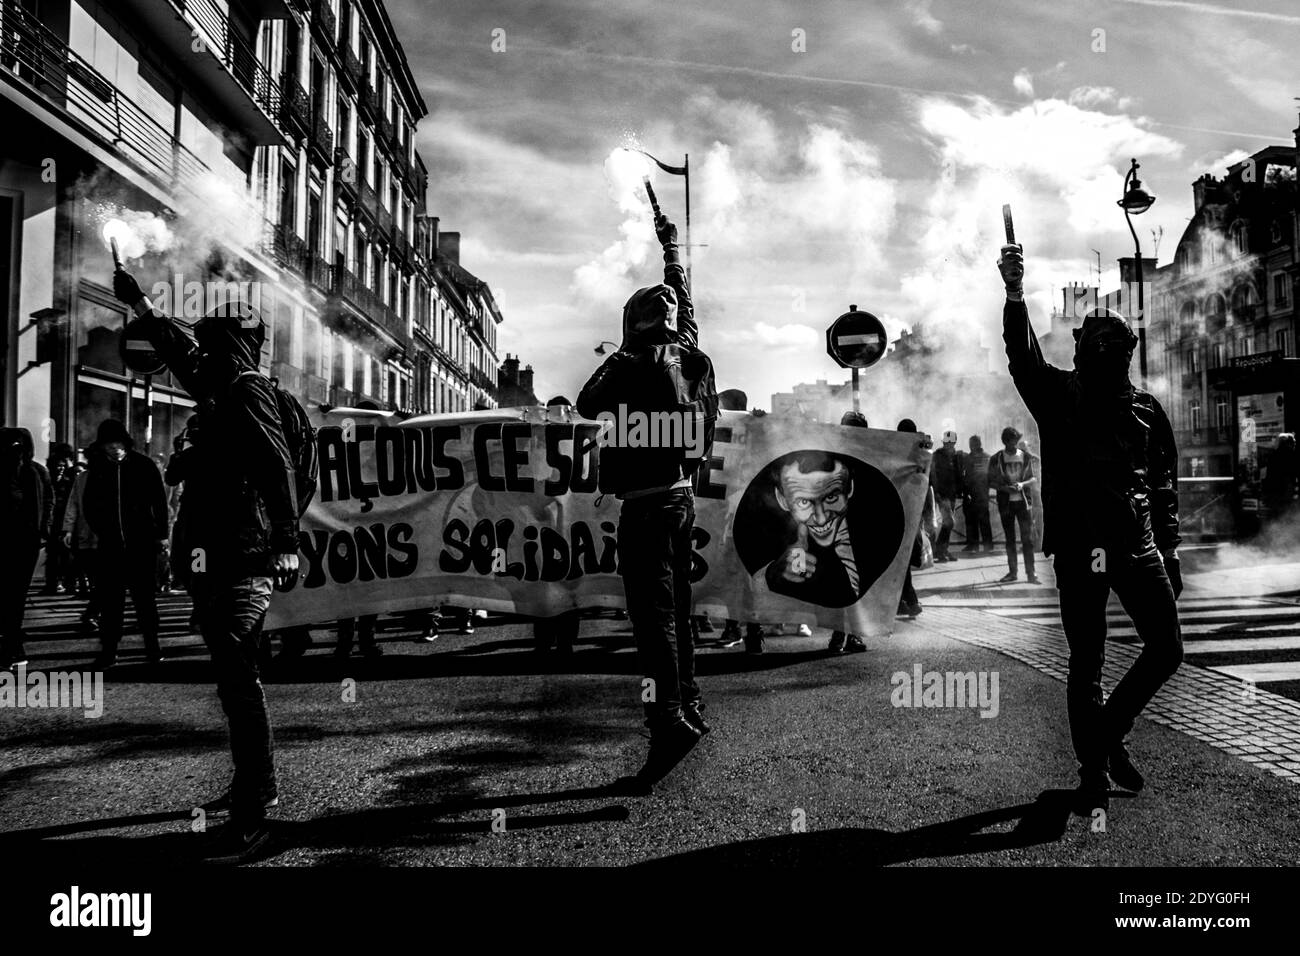 FRA - RENNES - MANIFESTATION CONTRE LA NOUVELLE LOI DU TRAVAIL. Rennes, 21 septembre 2017, manifestation contre la nouvelle loi du travail. FRA - RENNES - MANIFESTAT Banque D'Images